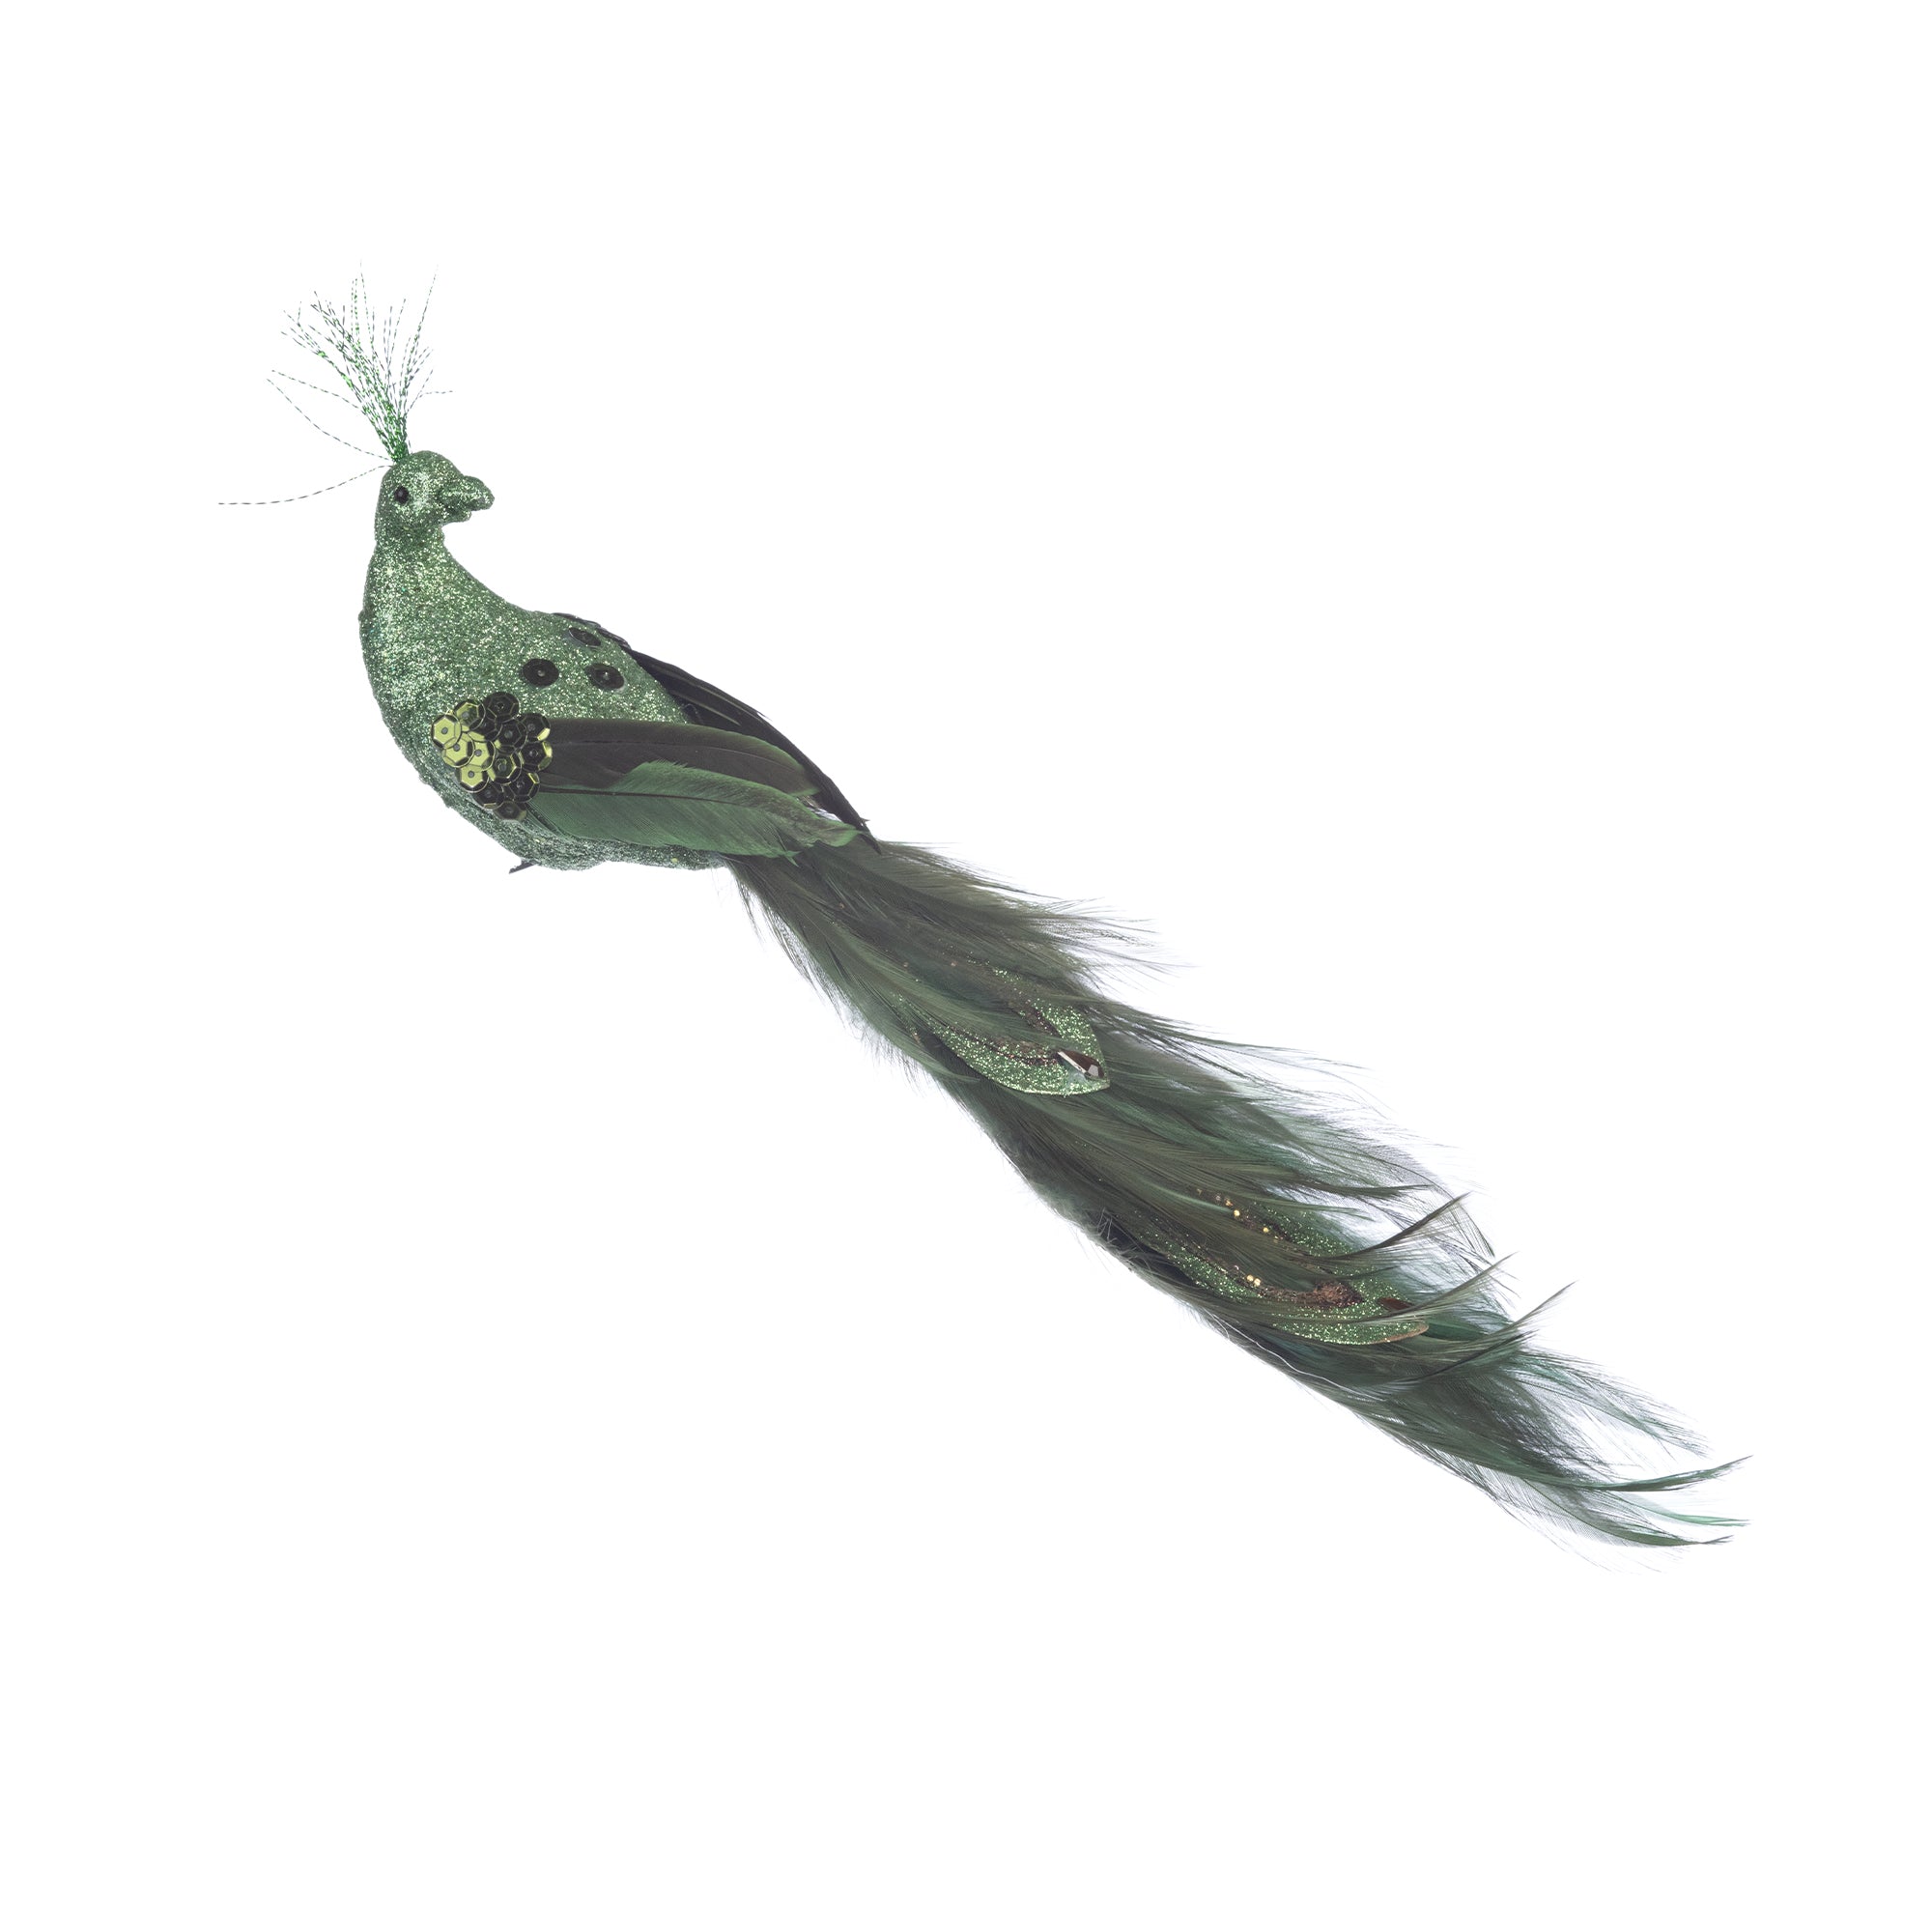 Decoratiune Craciun, pasare paun cu gliter si strasuri verde, 28cm